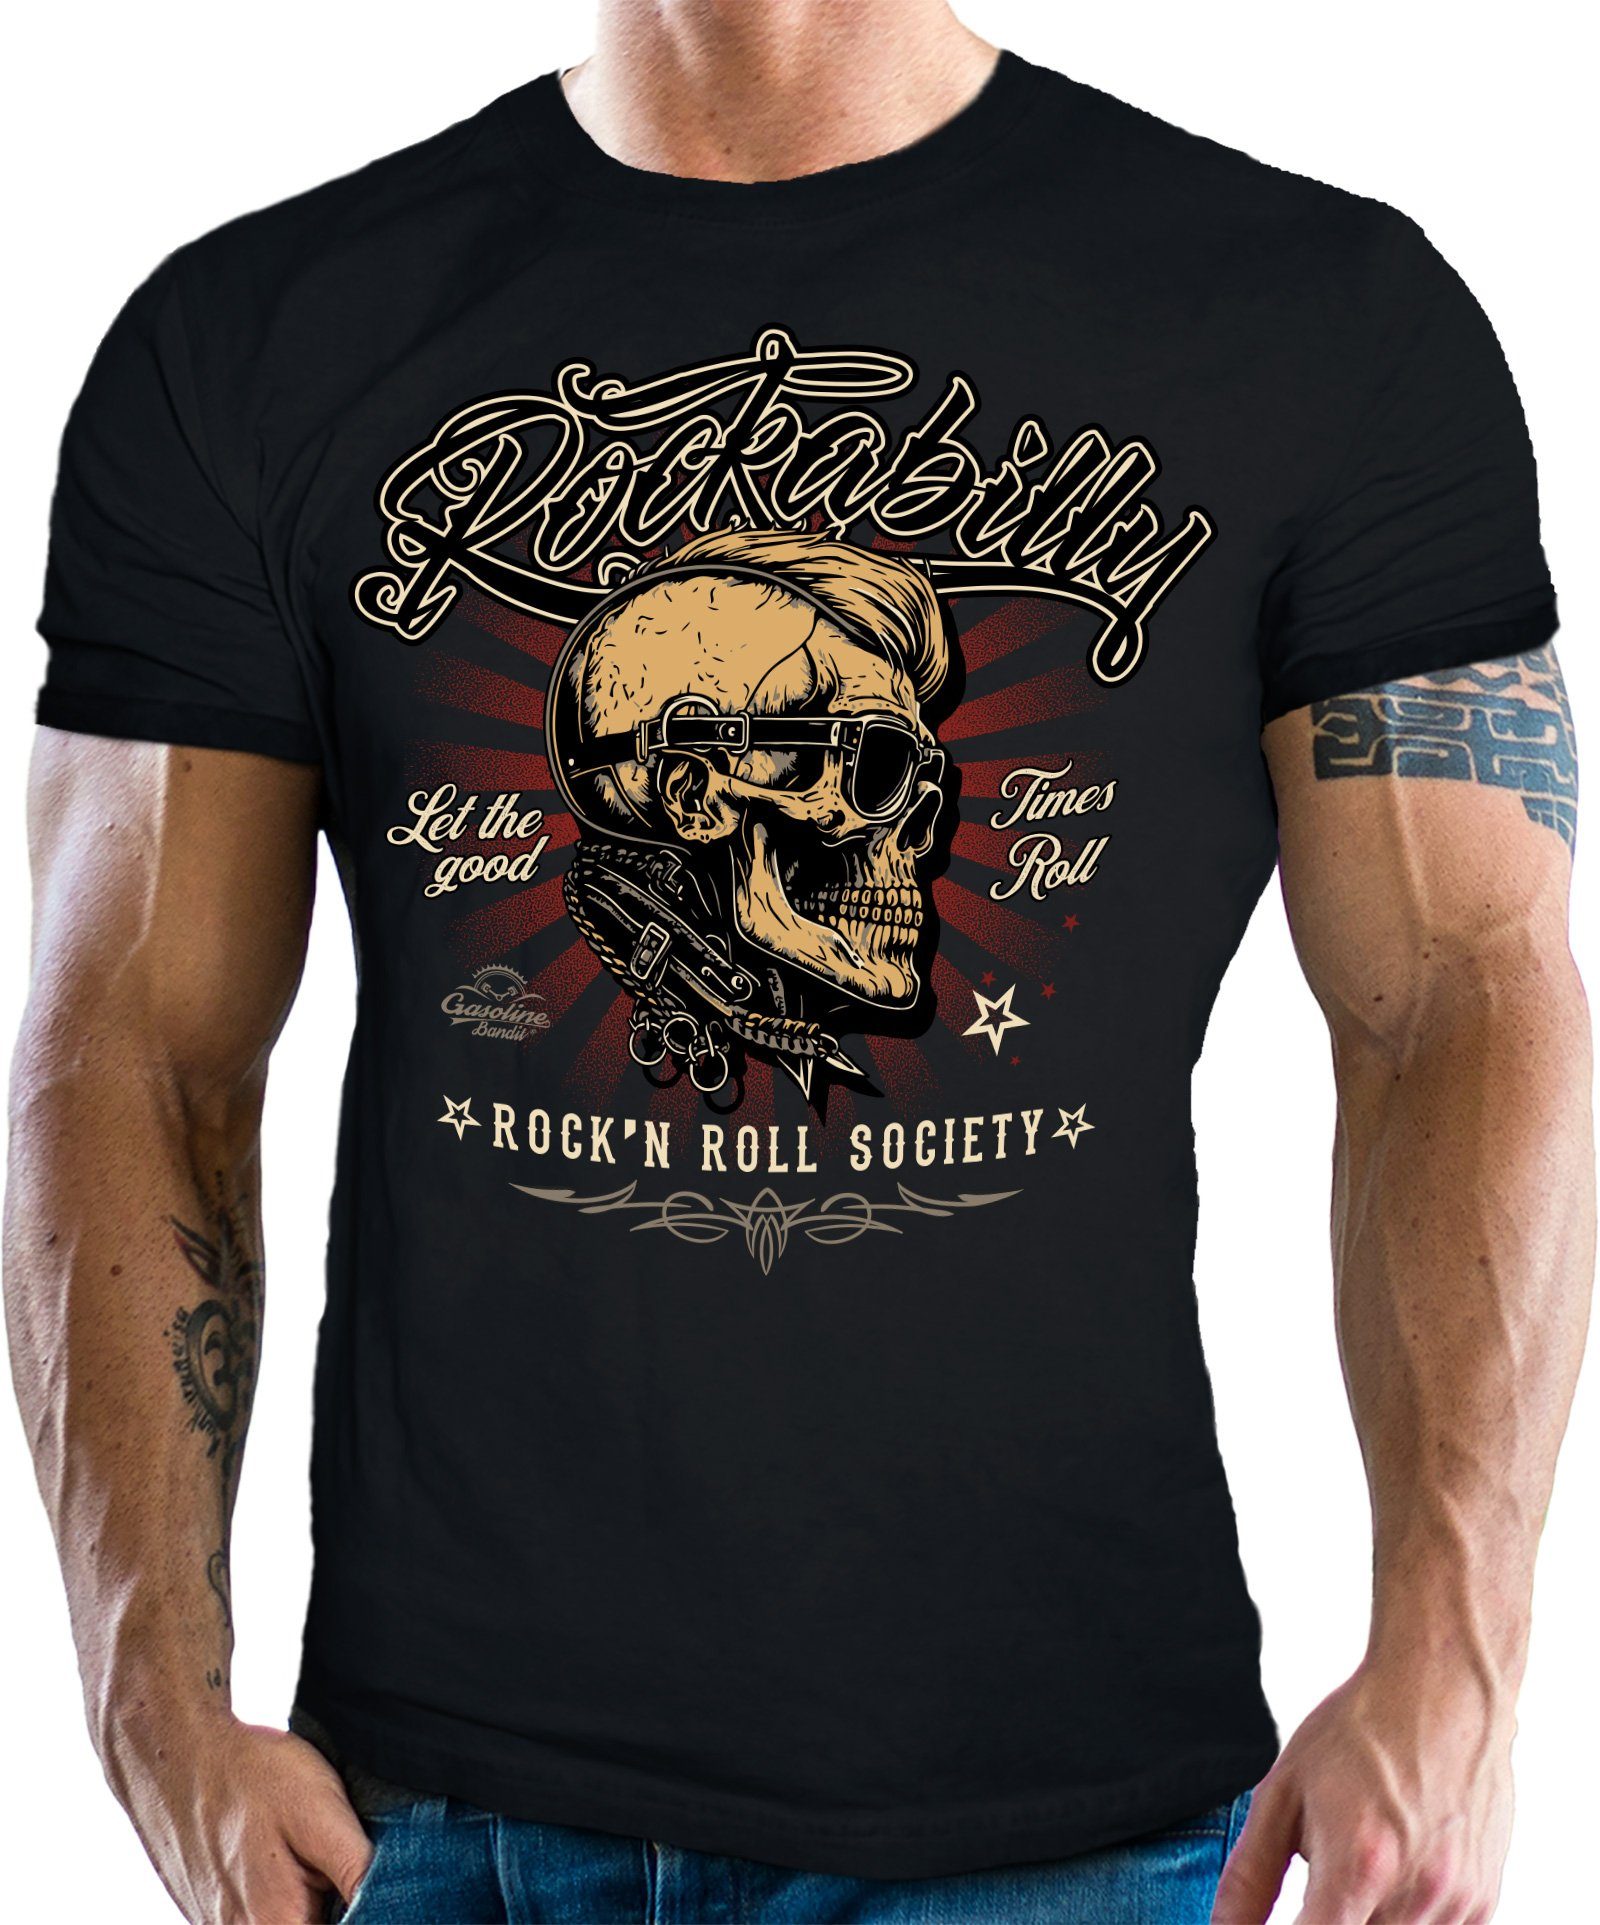 GASOLINE BANDIT® T-Shirt für Rockabilly Fans: Rock'n Roll Society